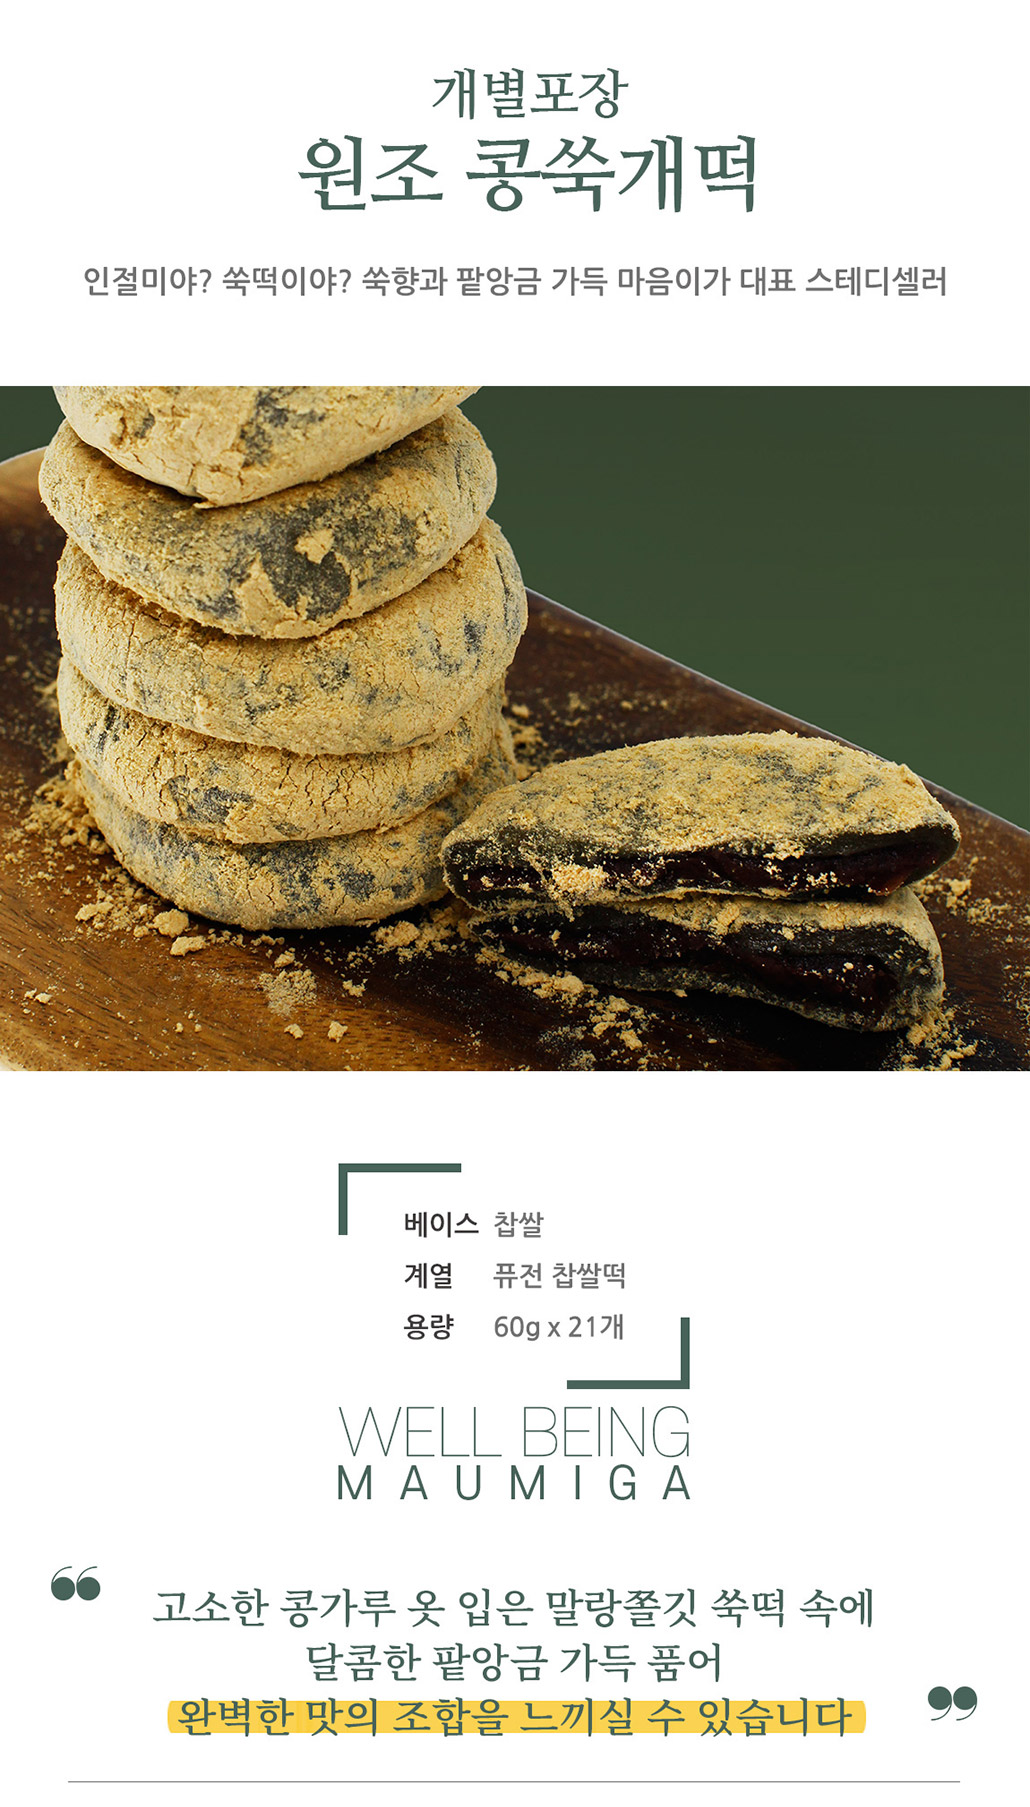 韓國食品-[Maumiga] Kongssukkkae Rice Cake 50g*12